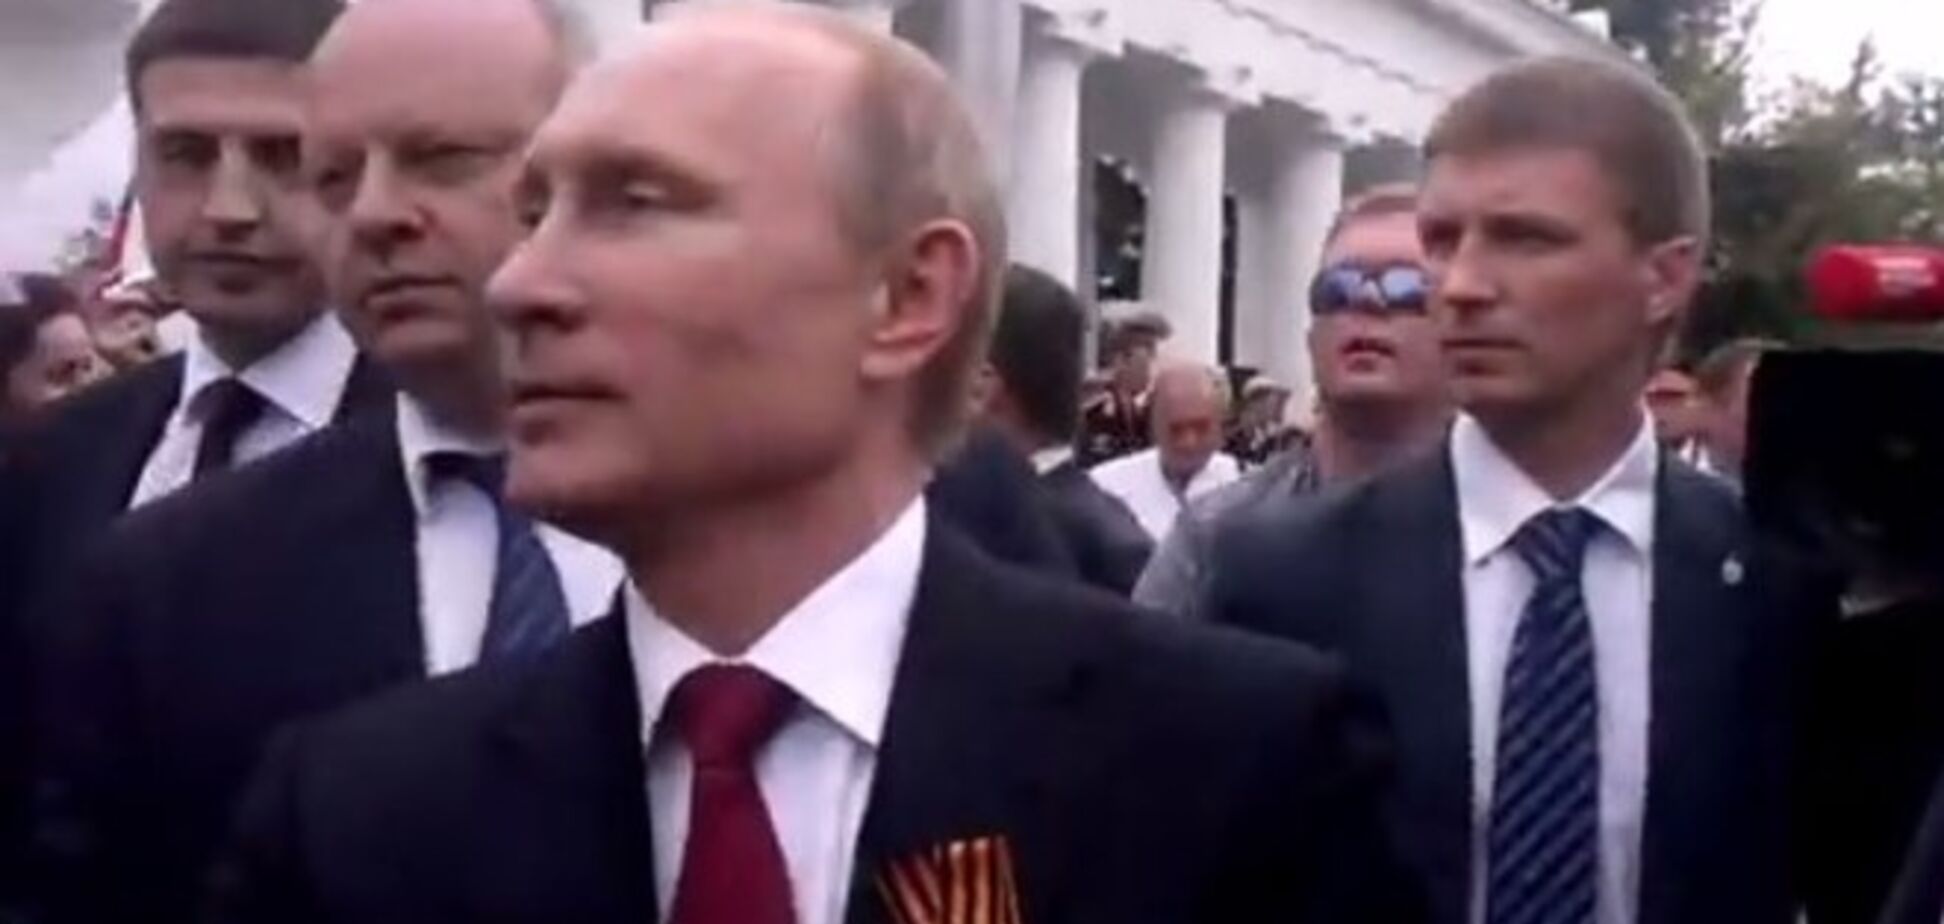 СМИ выдали видео майской истерики из-за приезда Путина в Севастополь за его визит 13 августа